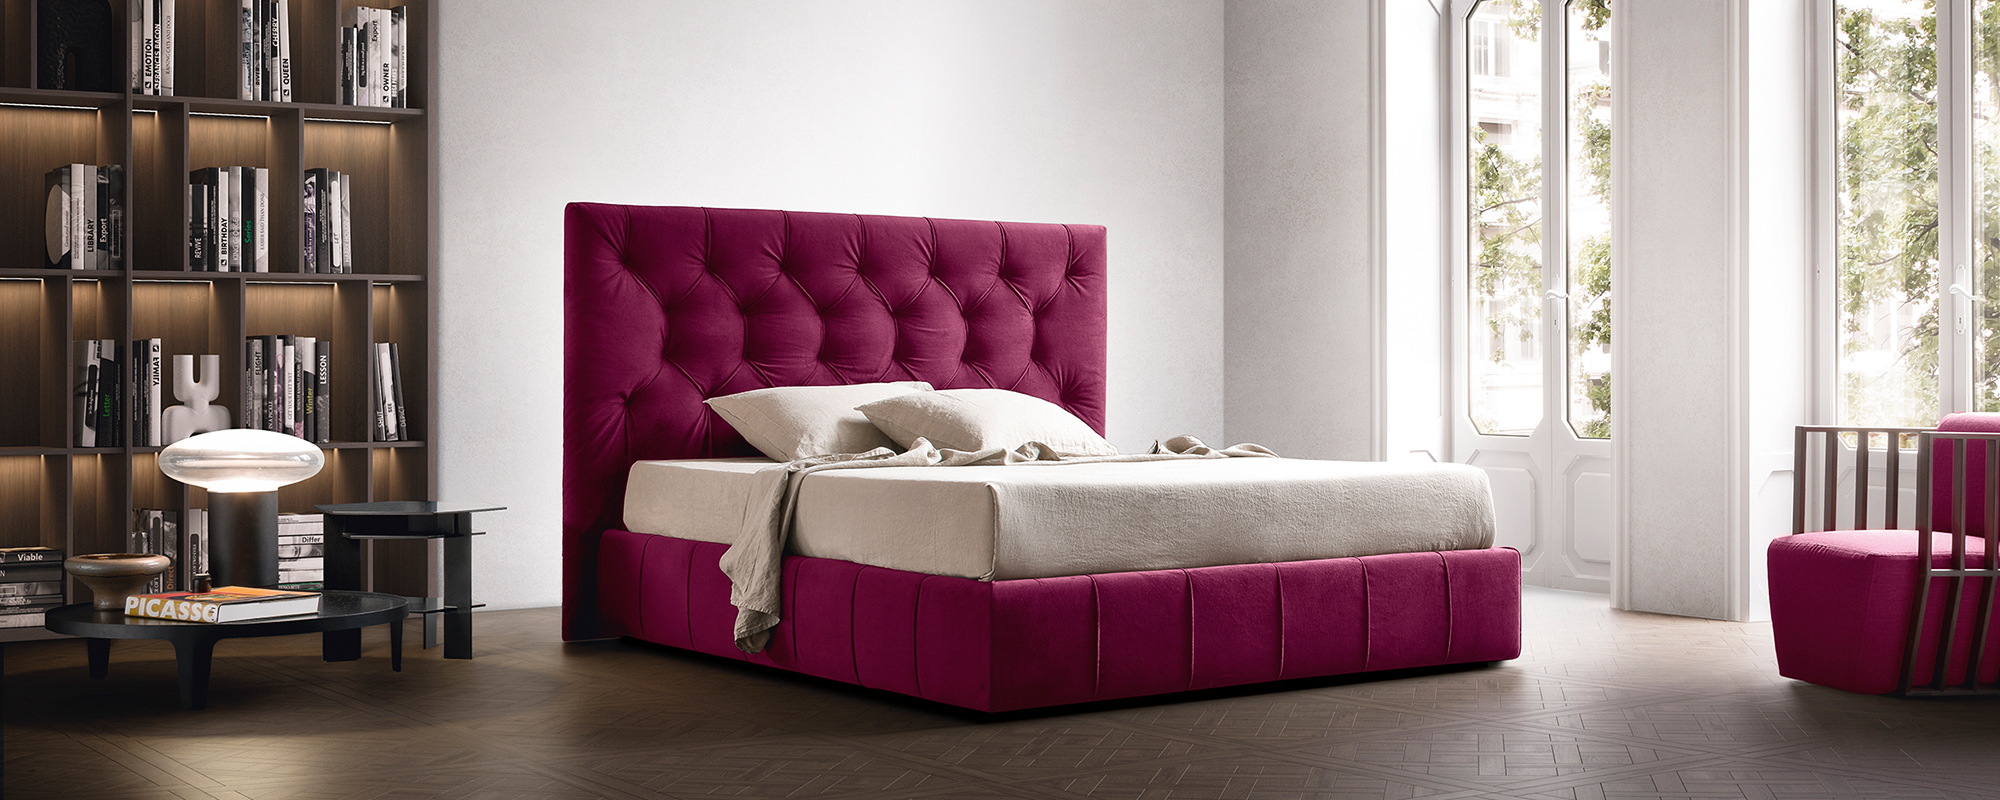 Hochwertige Möbel, Designermöbel, Schlafzimmer, Betten, Casanova24